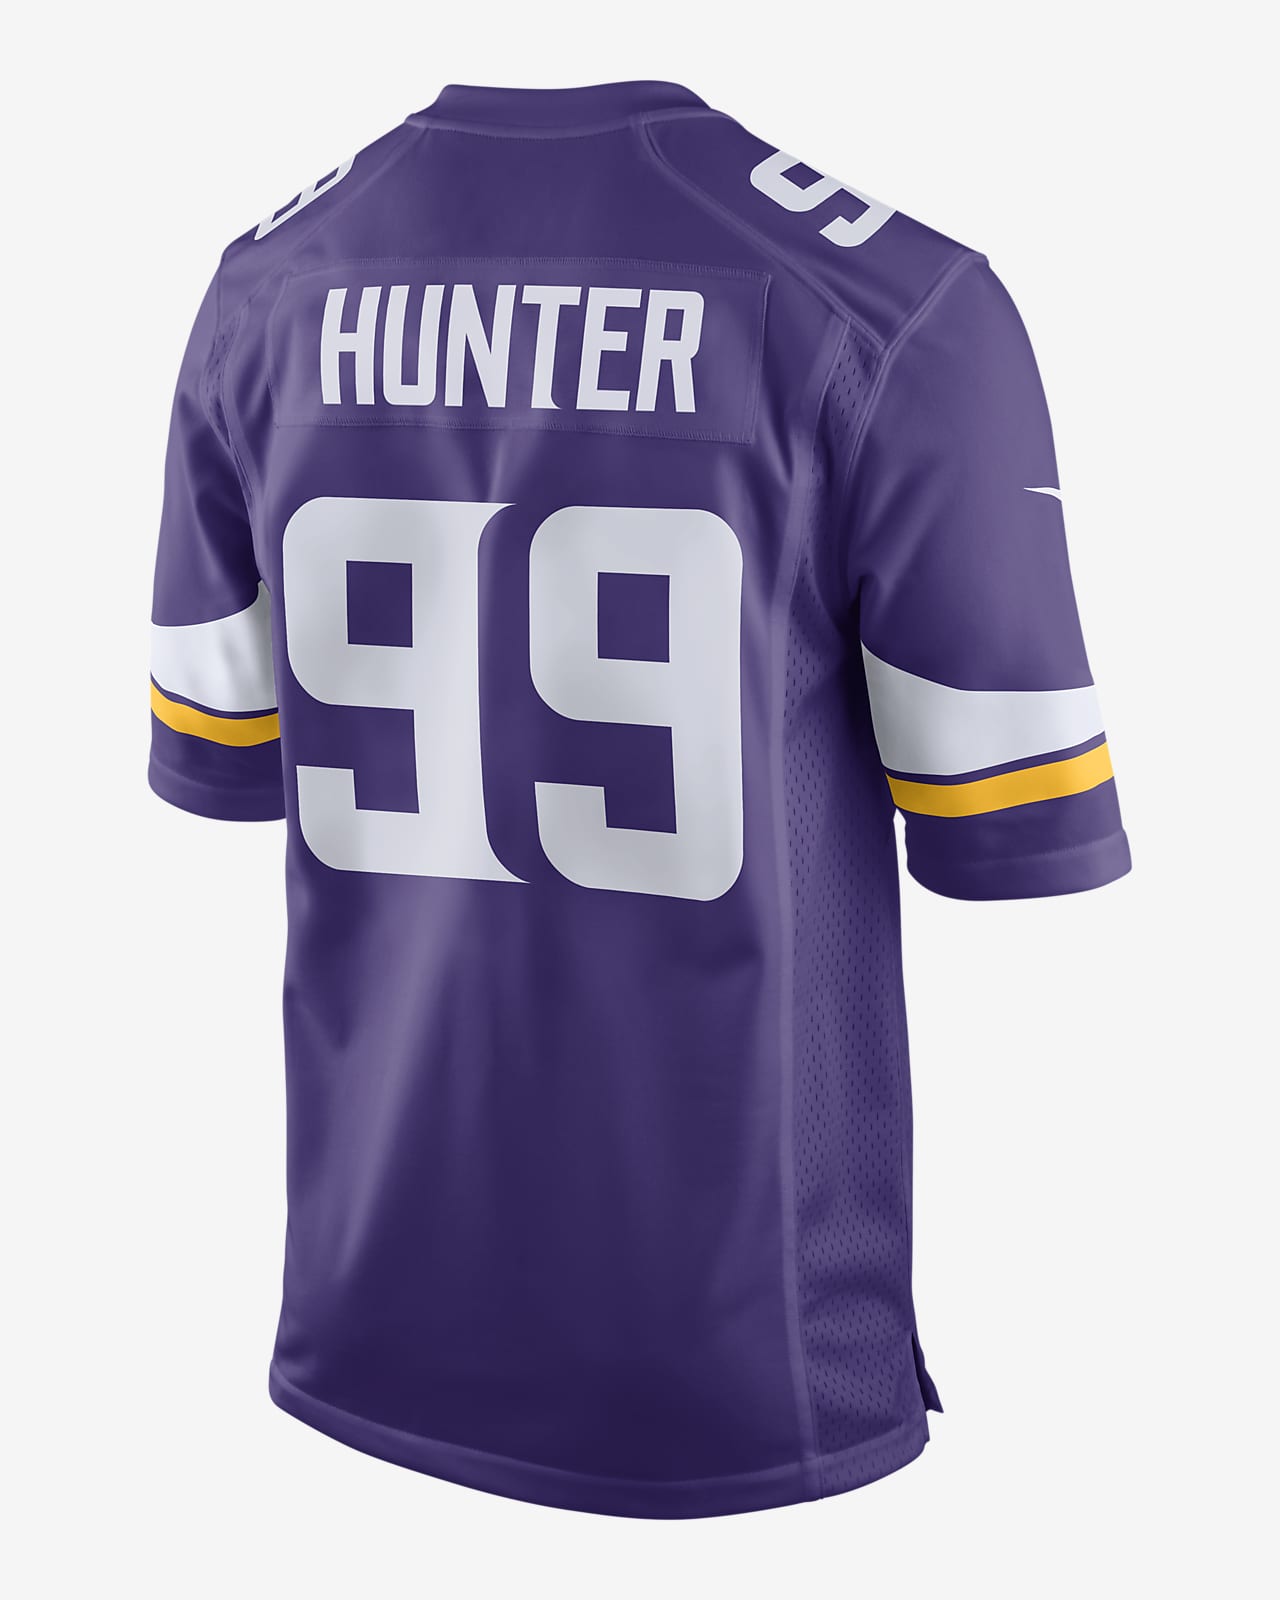 NFL Minnesota Vikings (Danielle Hunter) Men's Game Football Jersey